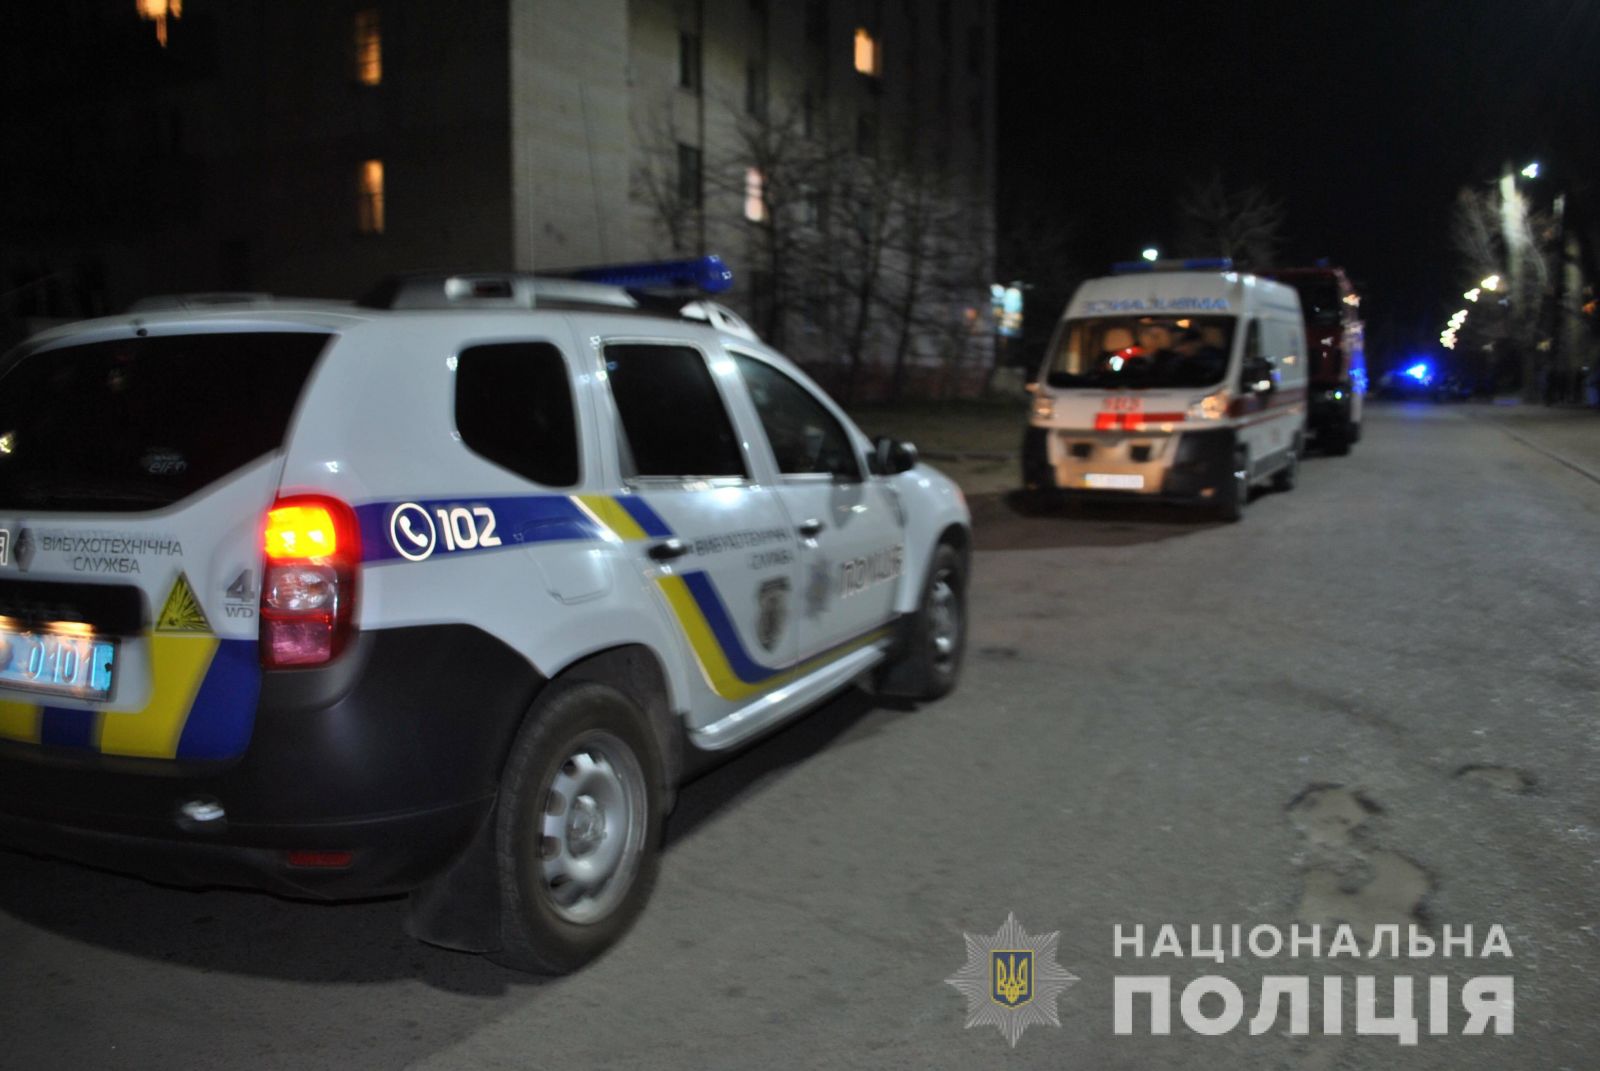 Мужчина угрожал взорвать гранату в жилом доме. Фото: hr.npu.gov.ua